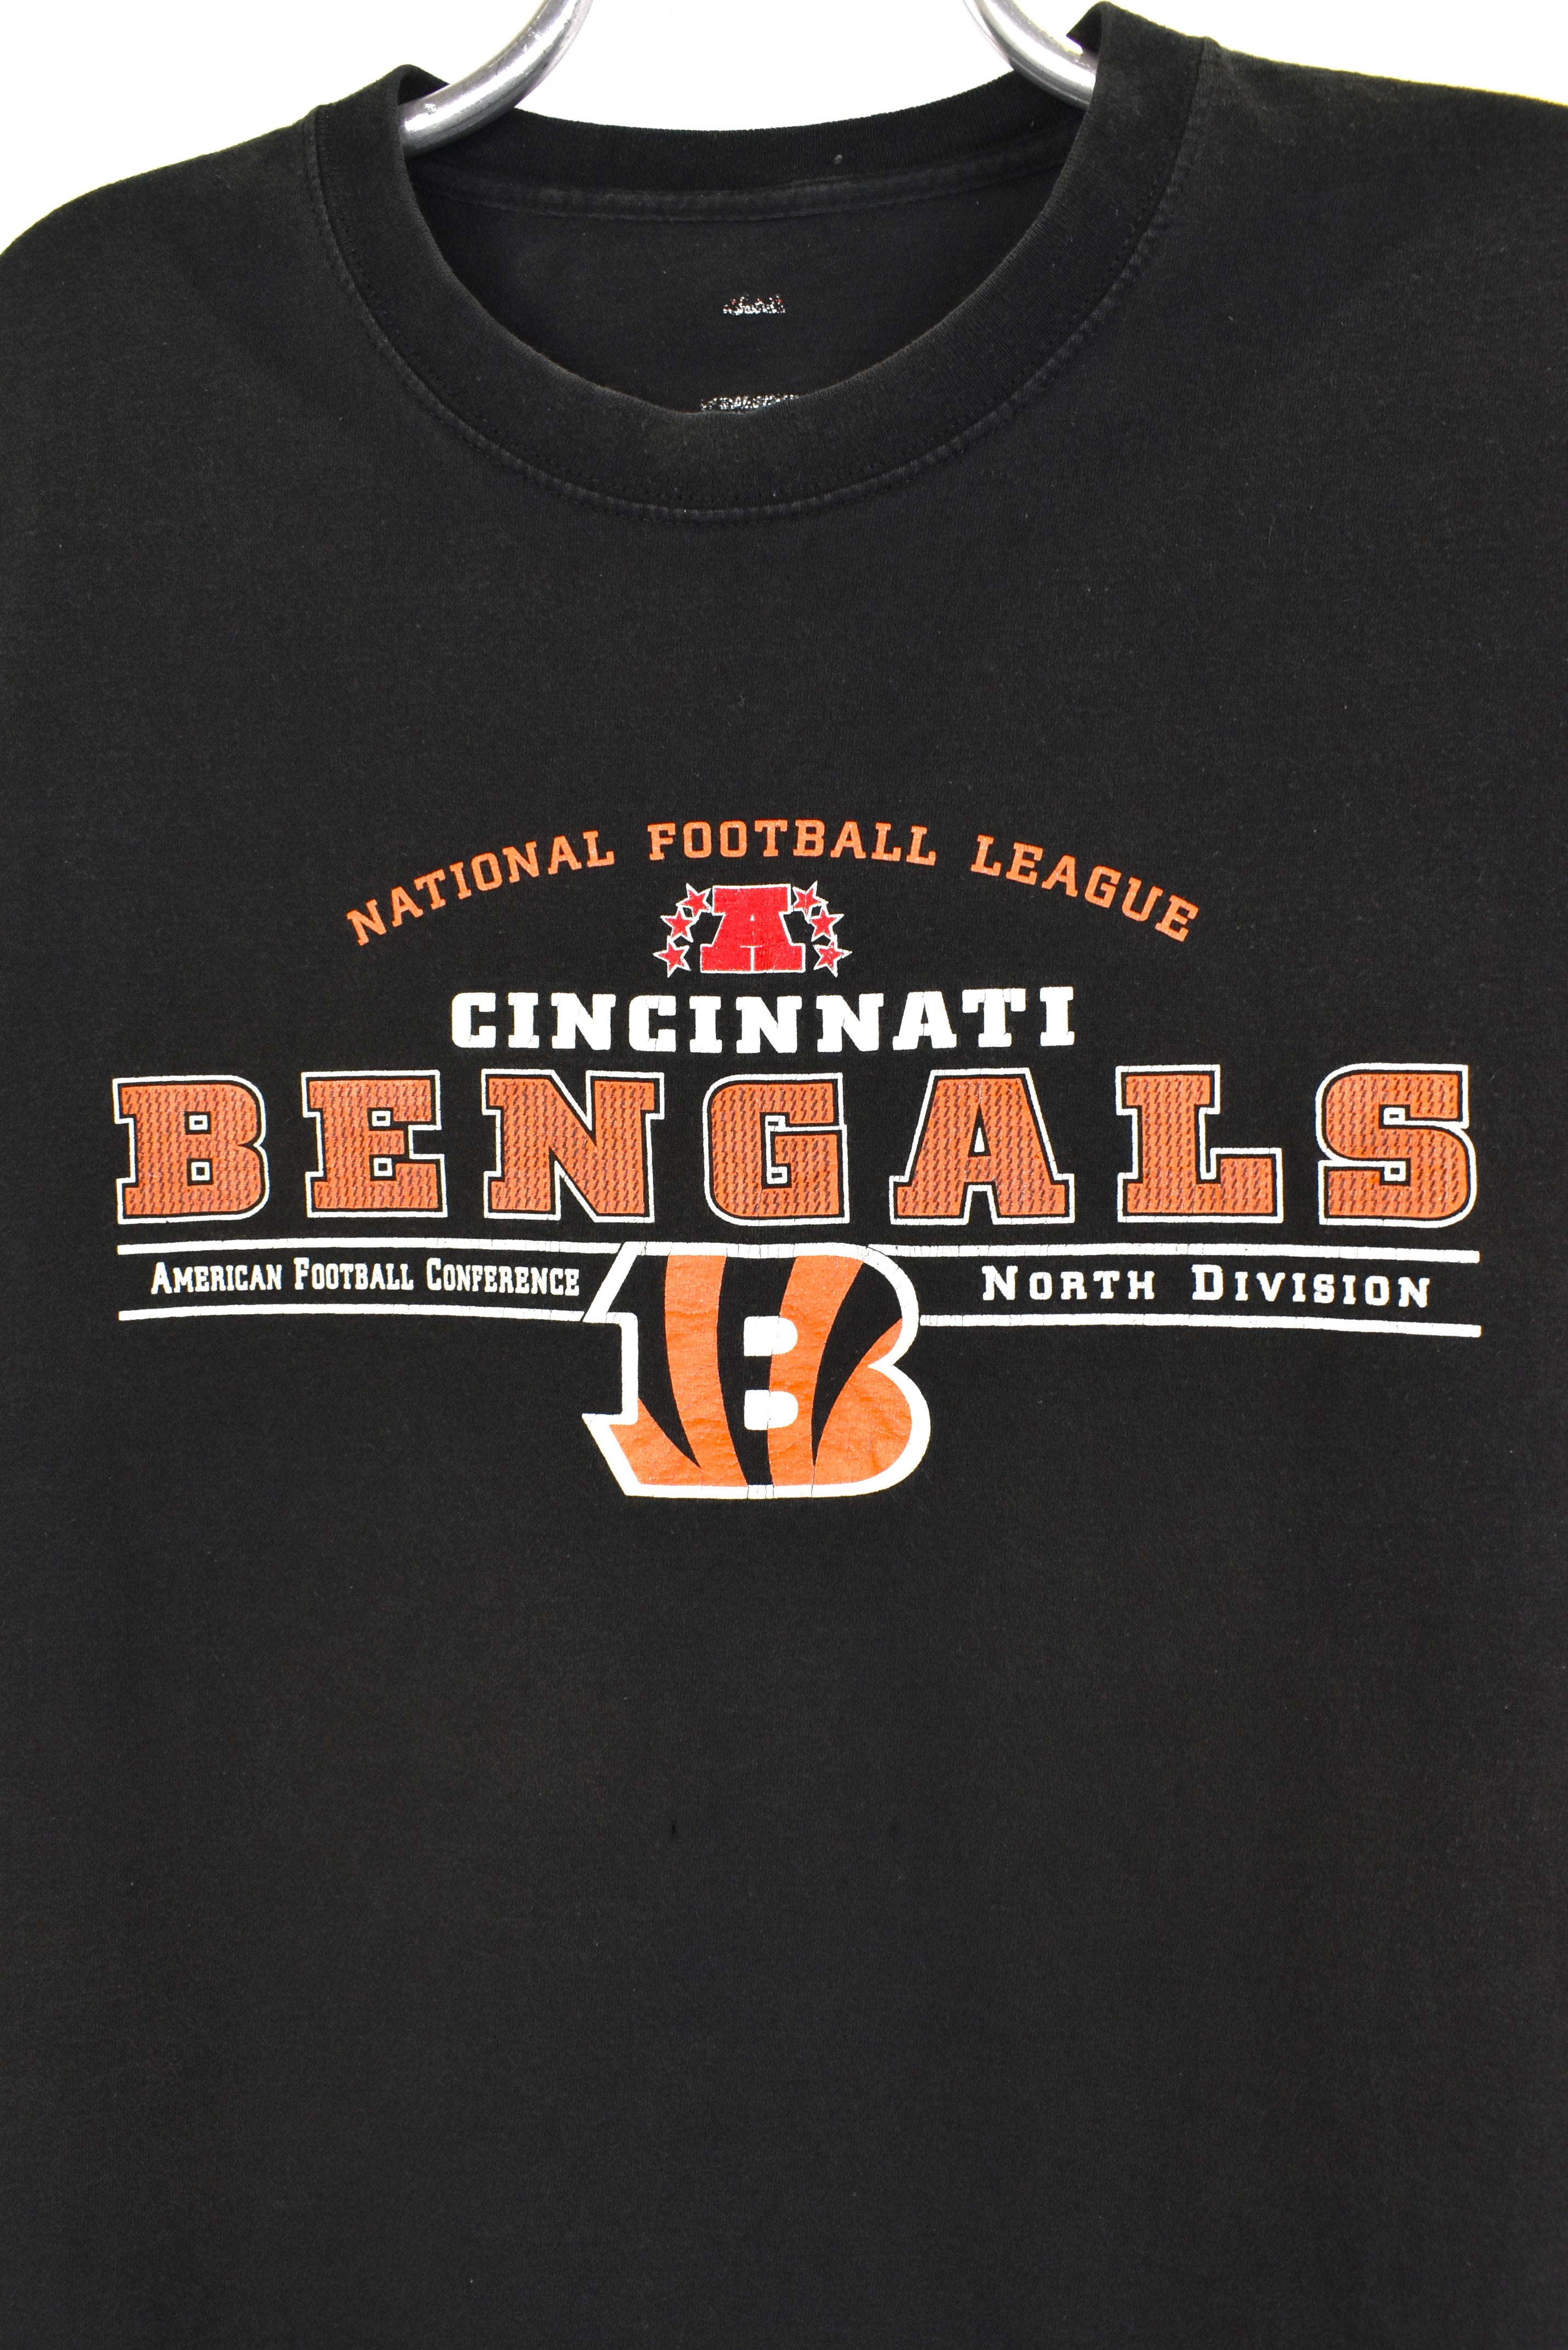 Vintage Cincinnati Bengals shirt, black graphic tee - AU Large PRO SPORT